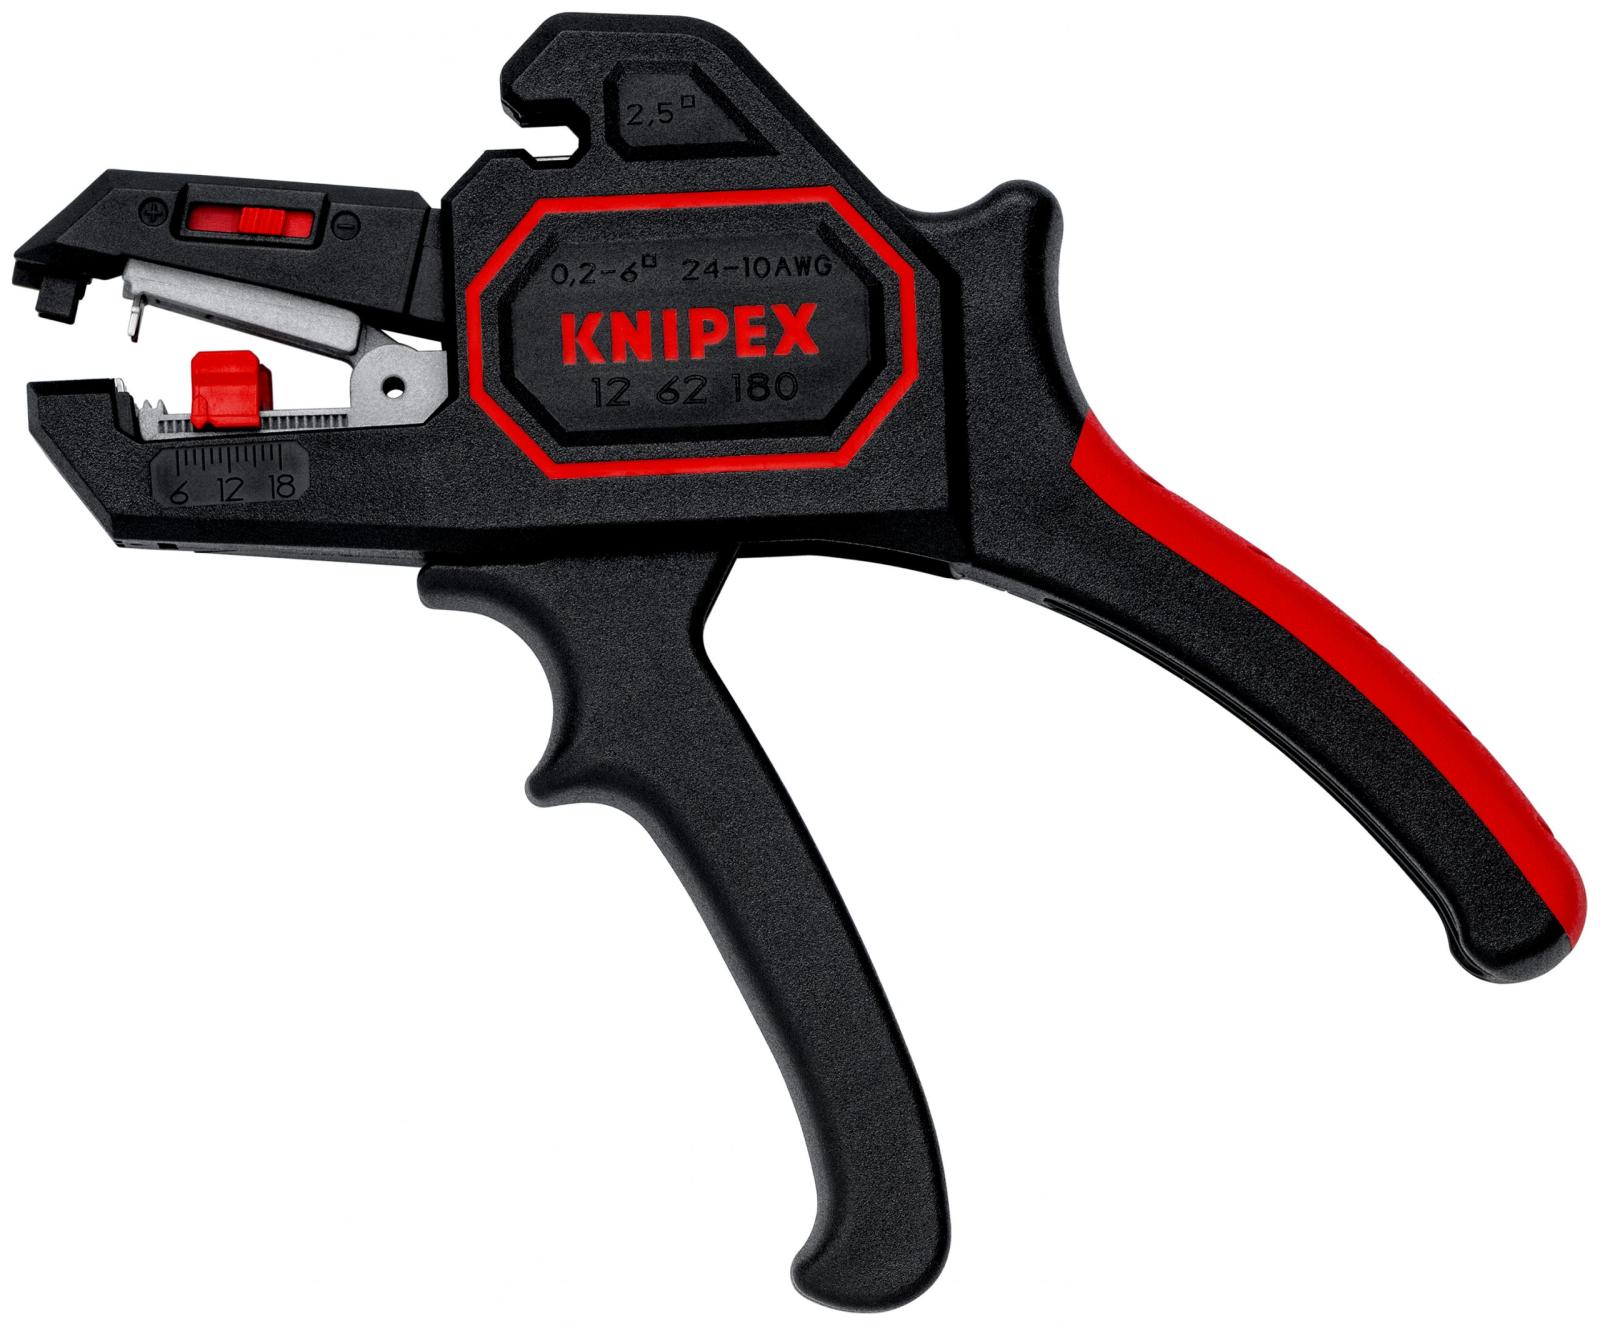 KNIPEX Kliešte odizolovacie automatické 180mm, 0,2-6,0 mm² 1262180